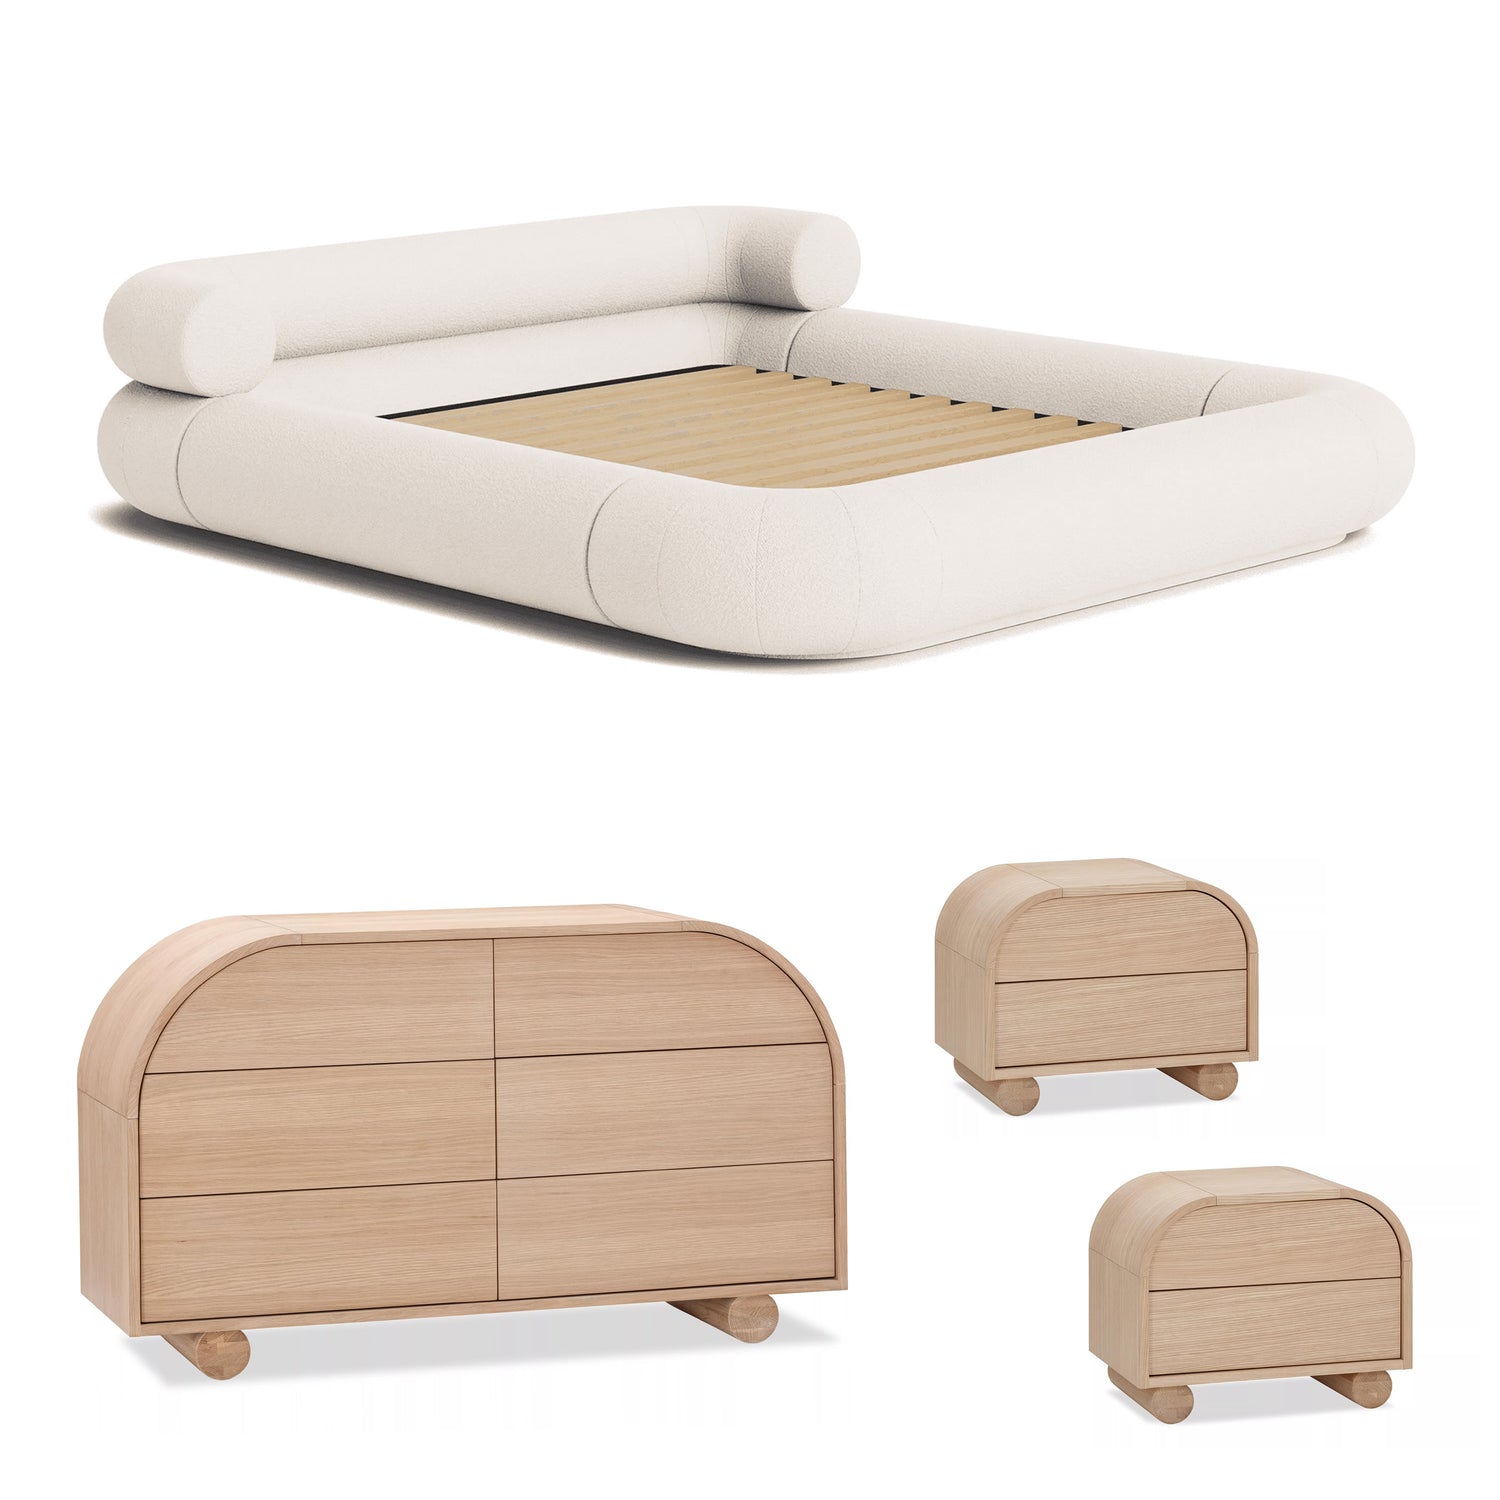 Bedroom Furniture Packages & Sets